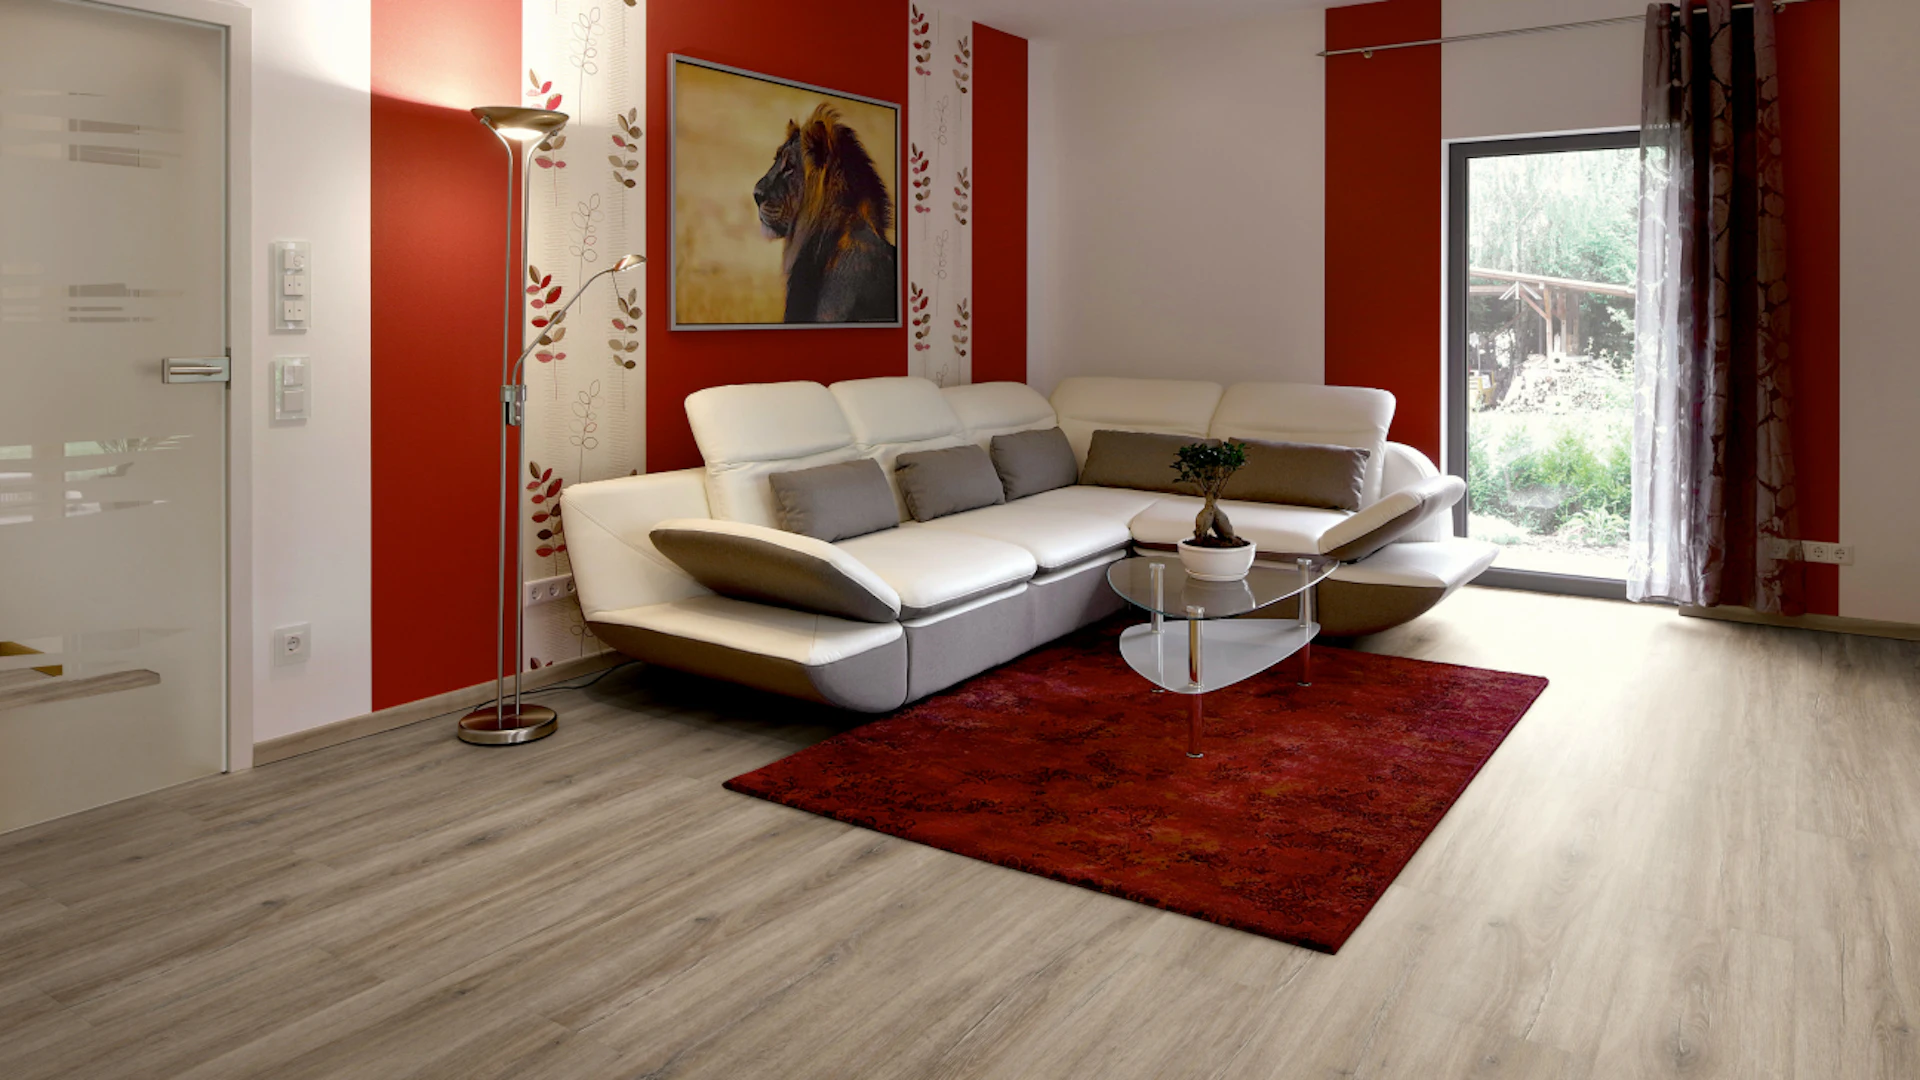 Project Floors adhesive Vinyl - floors@work55 PW3912 /55 (PW391255)